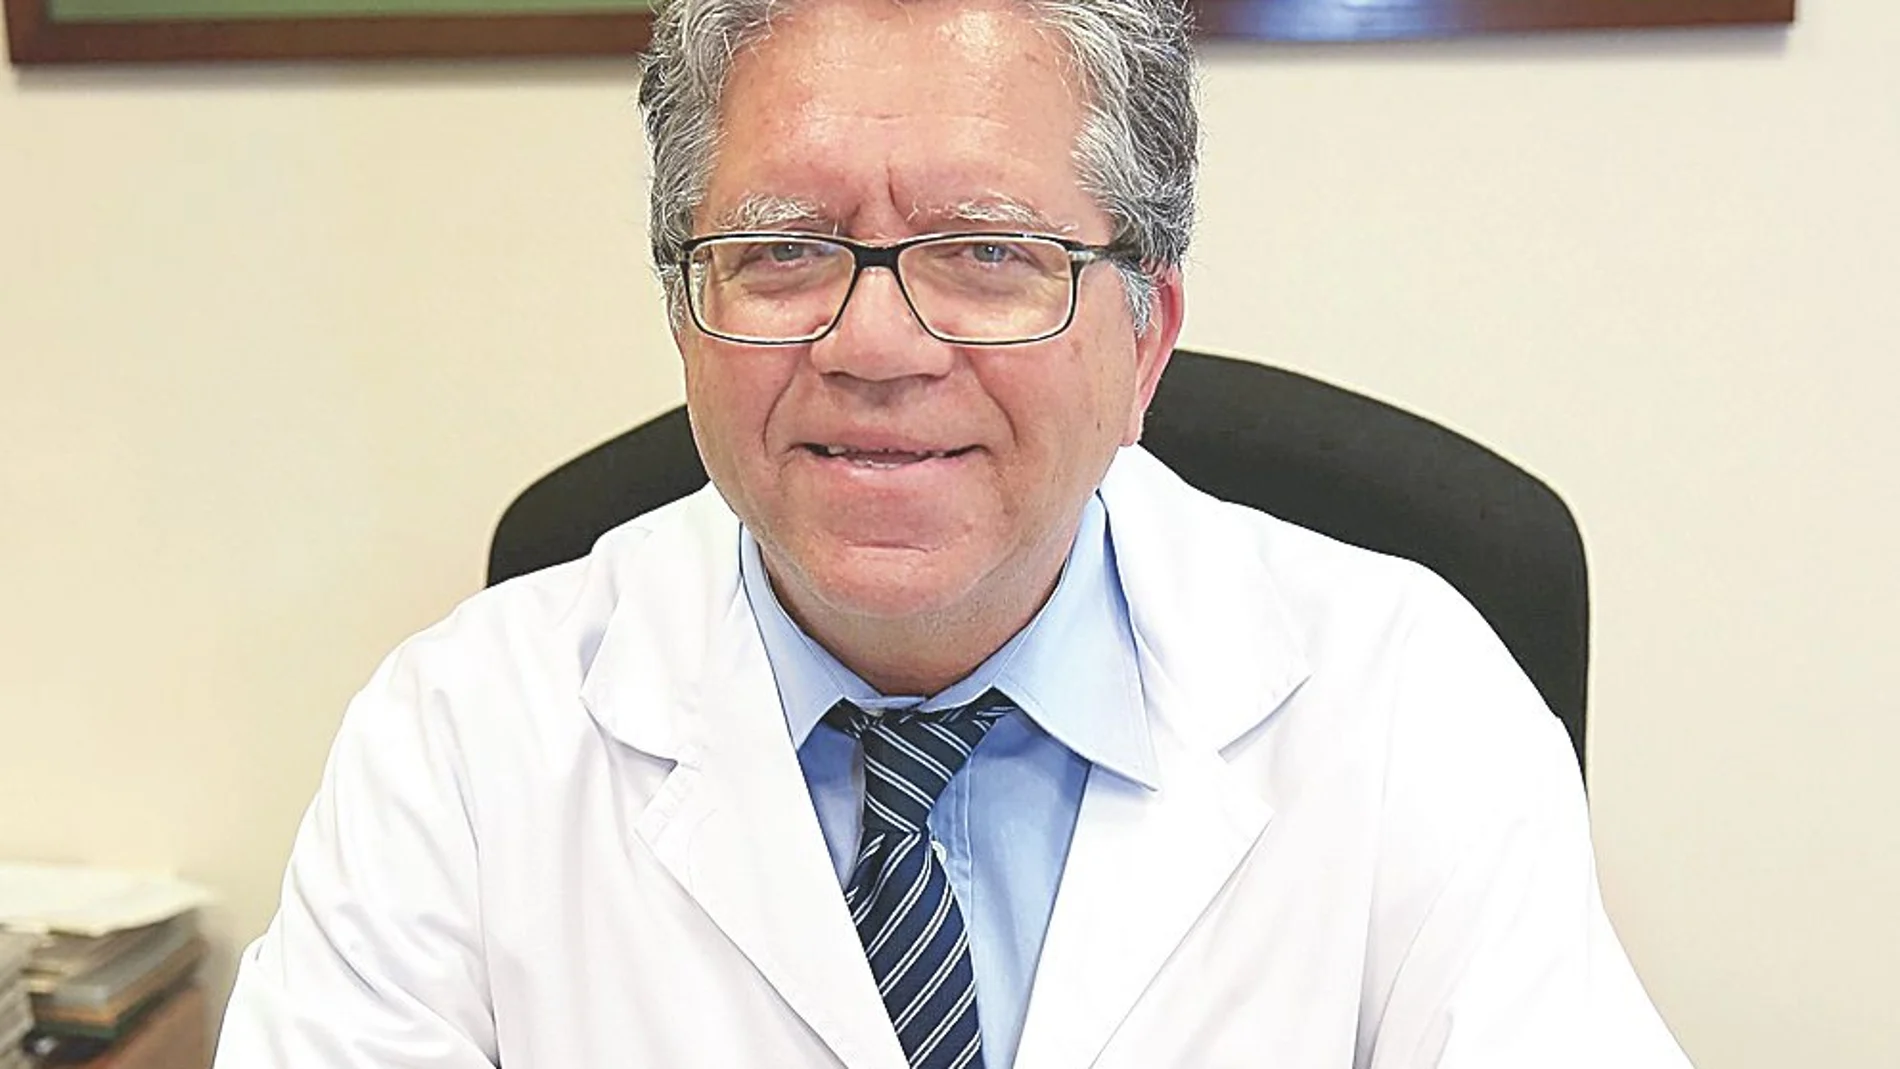 Dr. Manuel Praga Terente / Nefrólogo asesor de la Unidad de Patología Glomerular del Complejo Hospitalario Ruber Juan Bravo. Grupo Quirónsalud